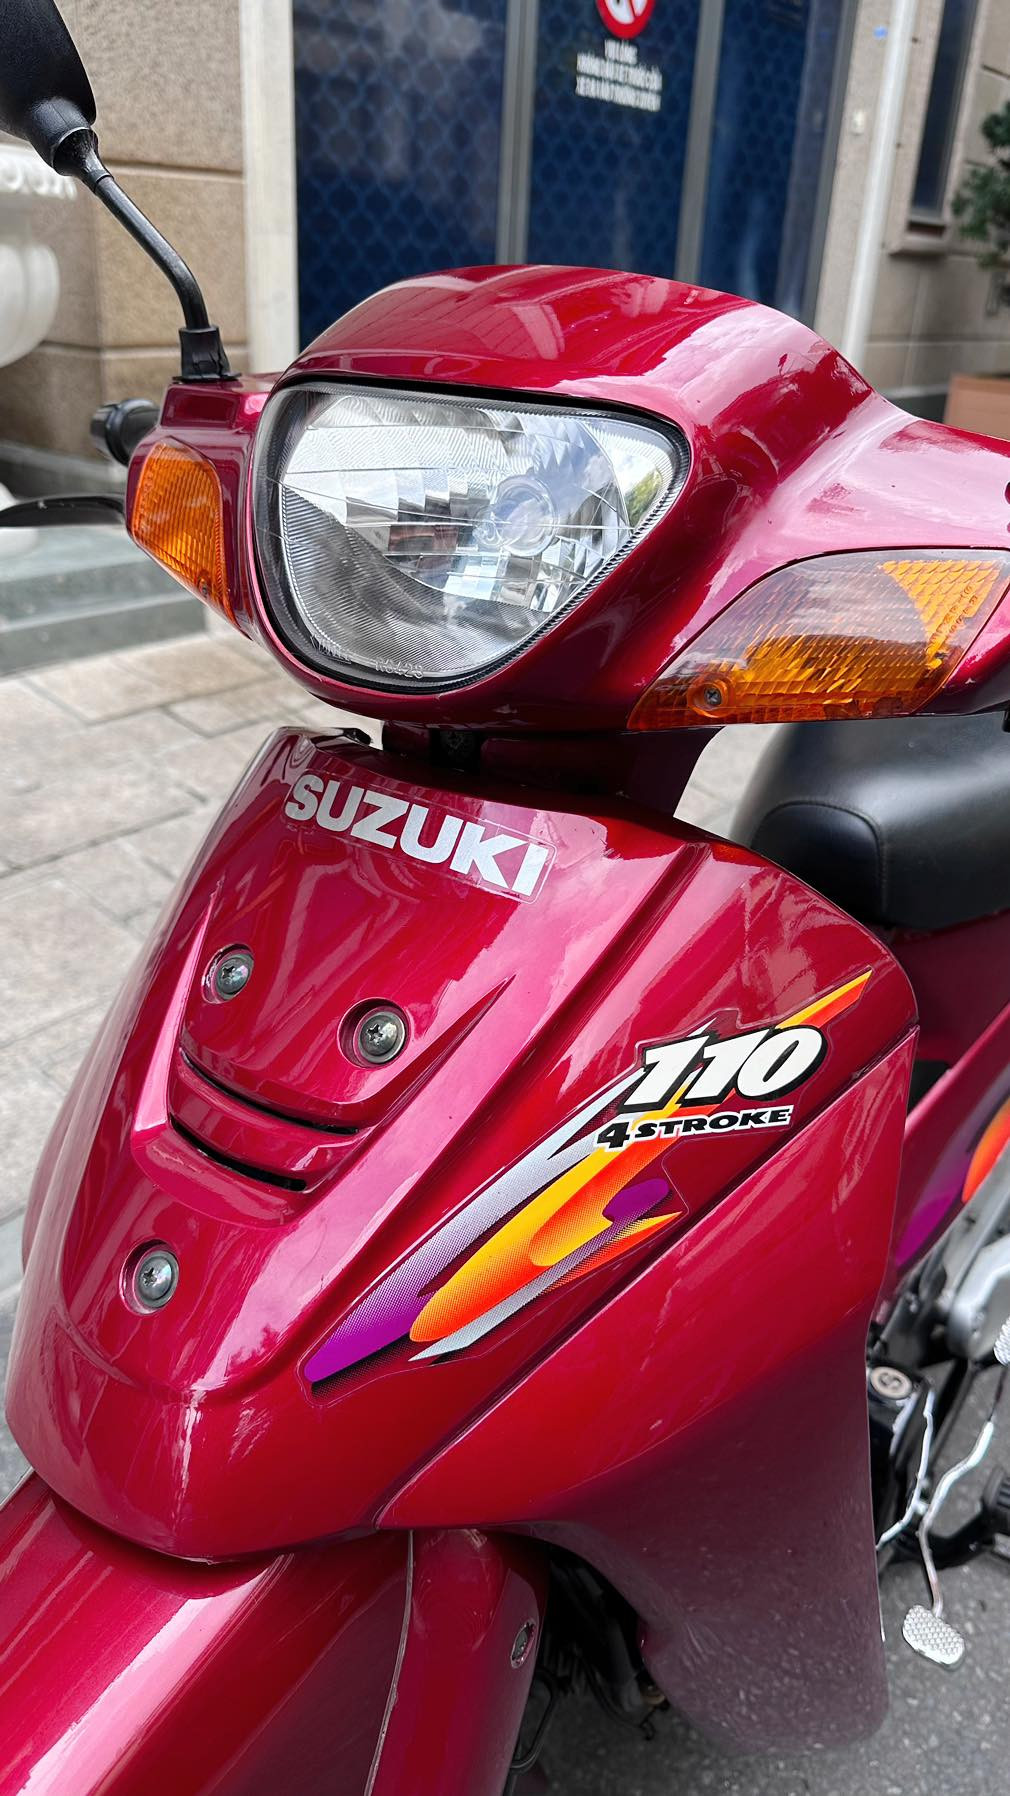 Xe máy Suzuki Best 23 năm tuổi gây ngạc nhiên với giá gần 100 triệu